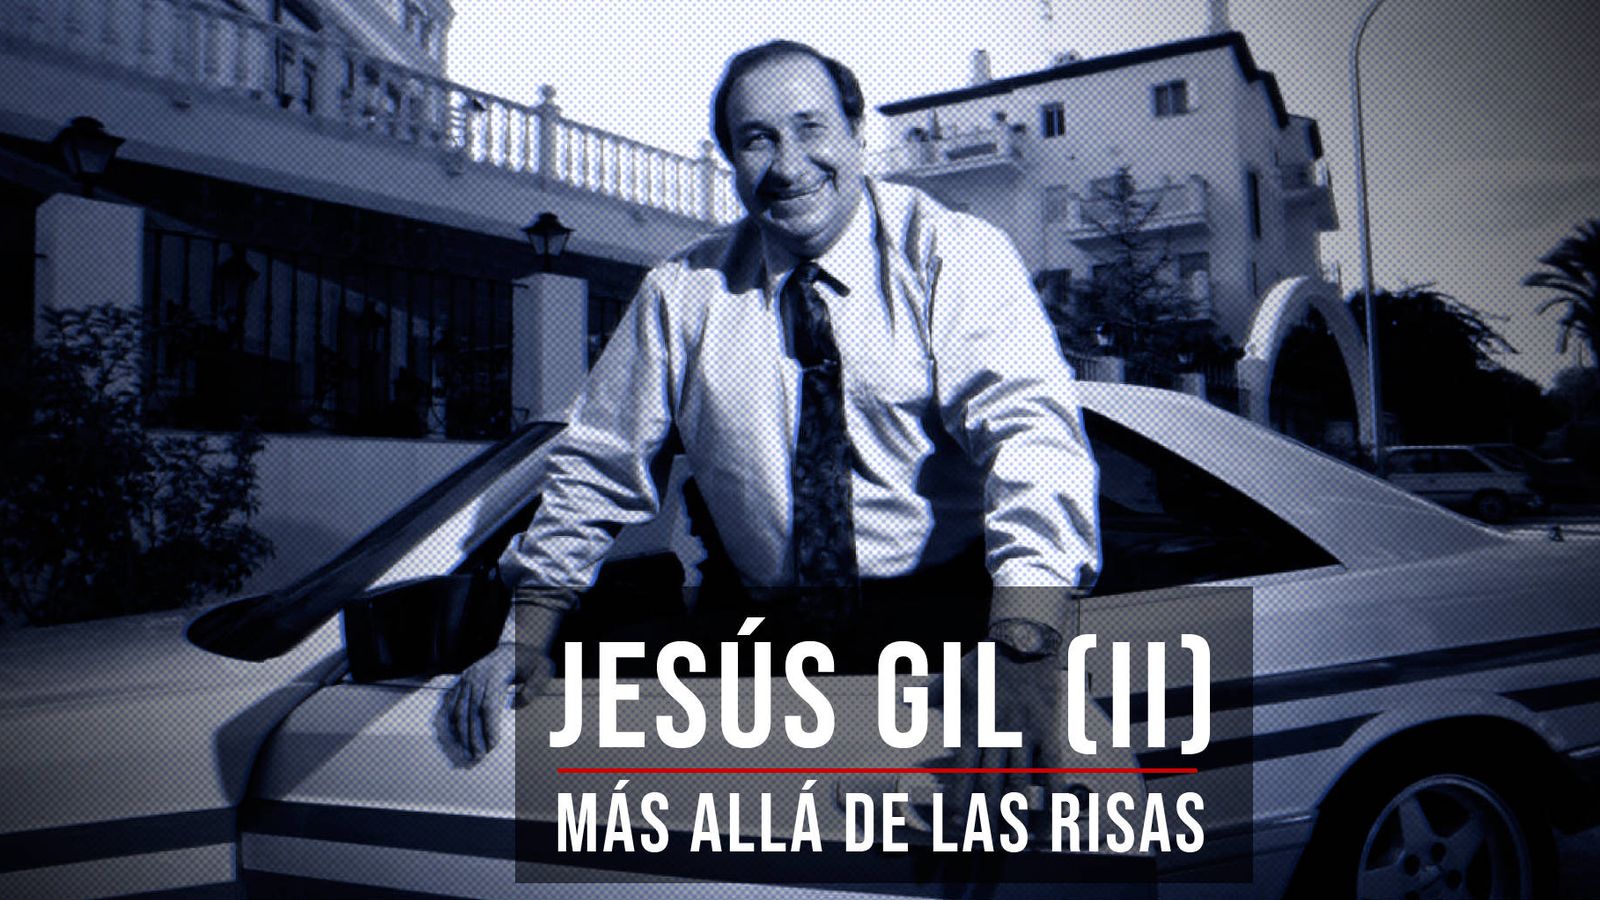 Foto: Jesús Gil (Más allá de las risas).